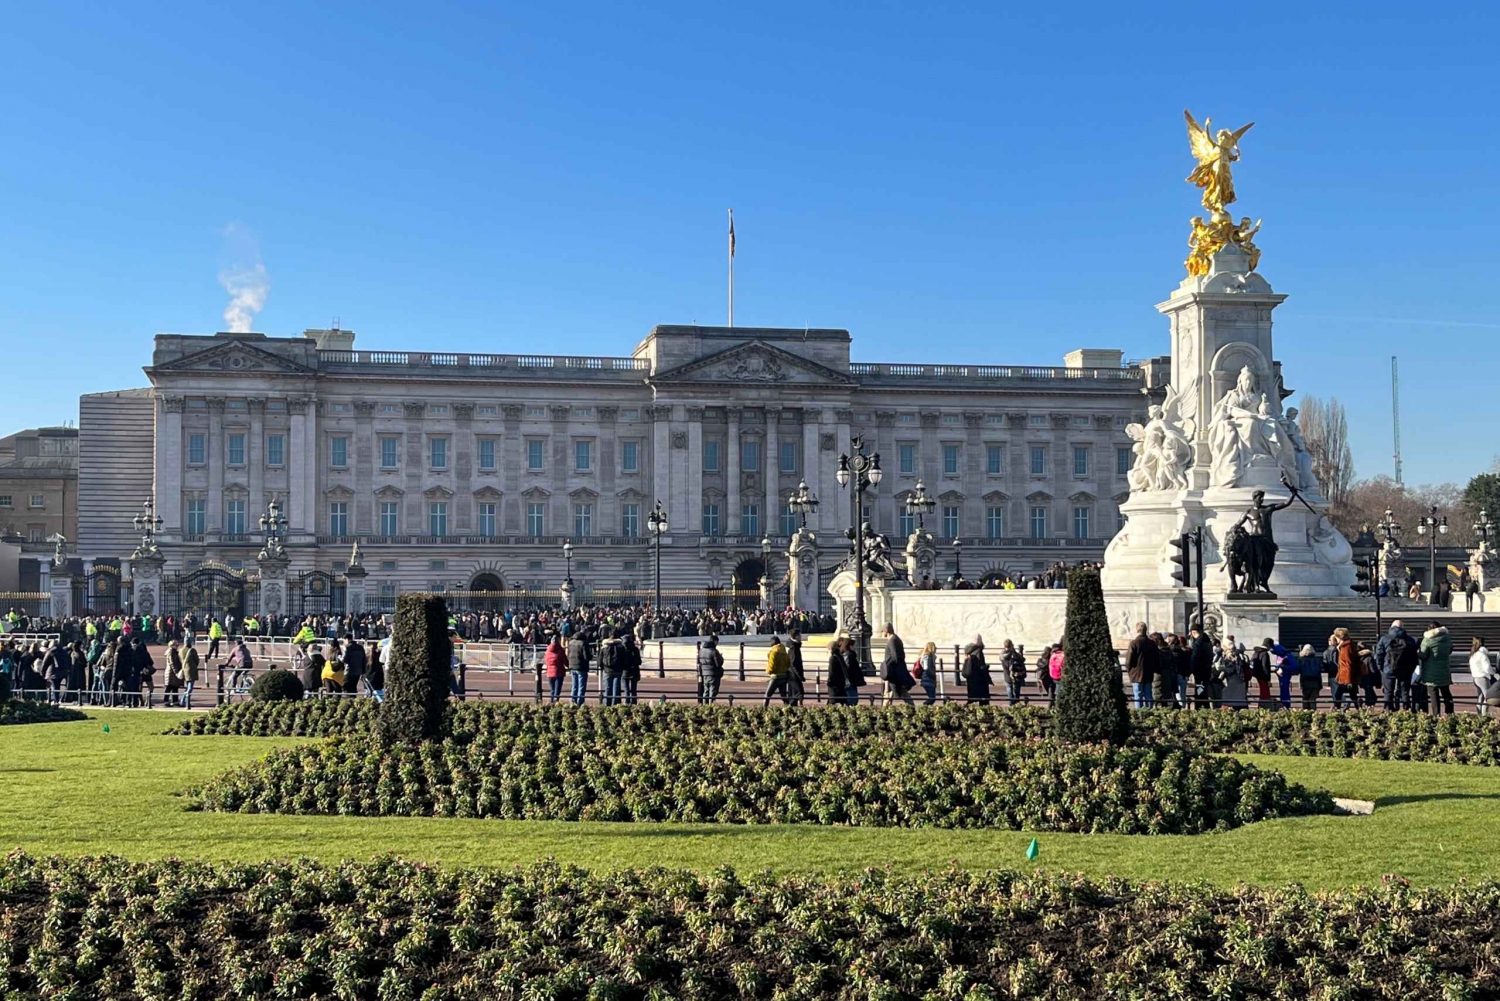 royal family tours london